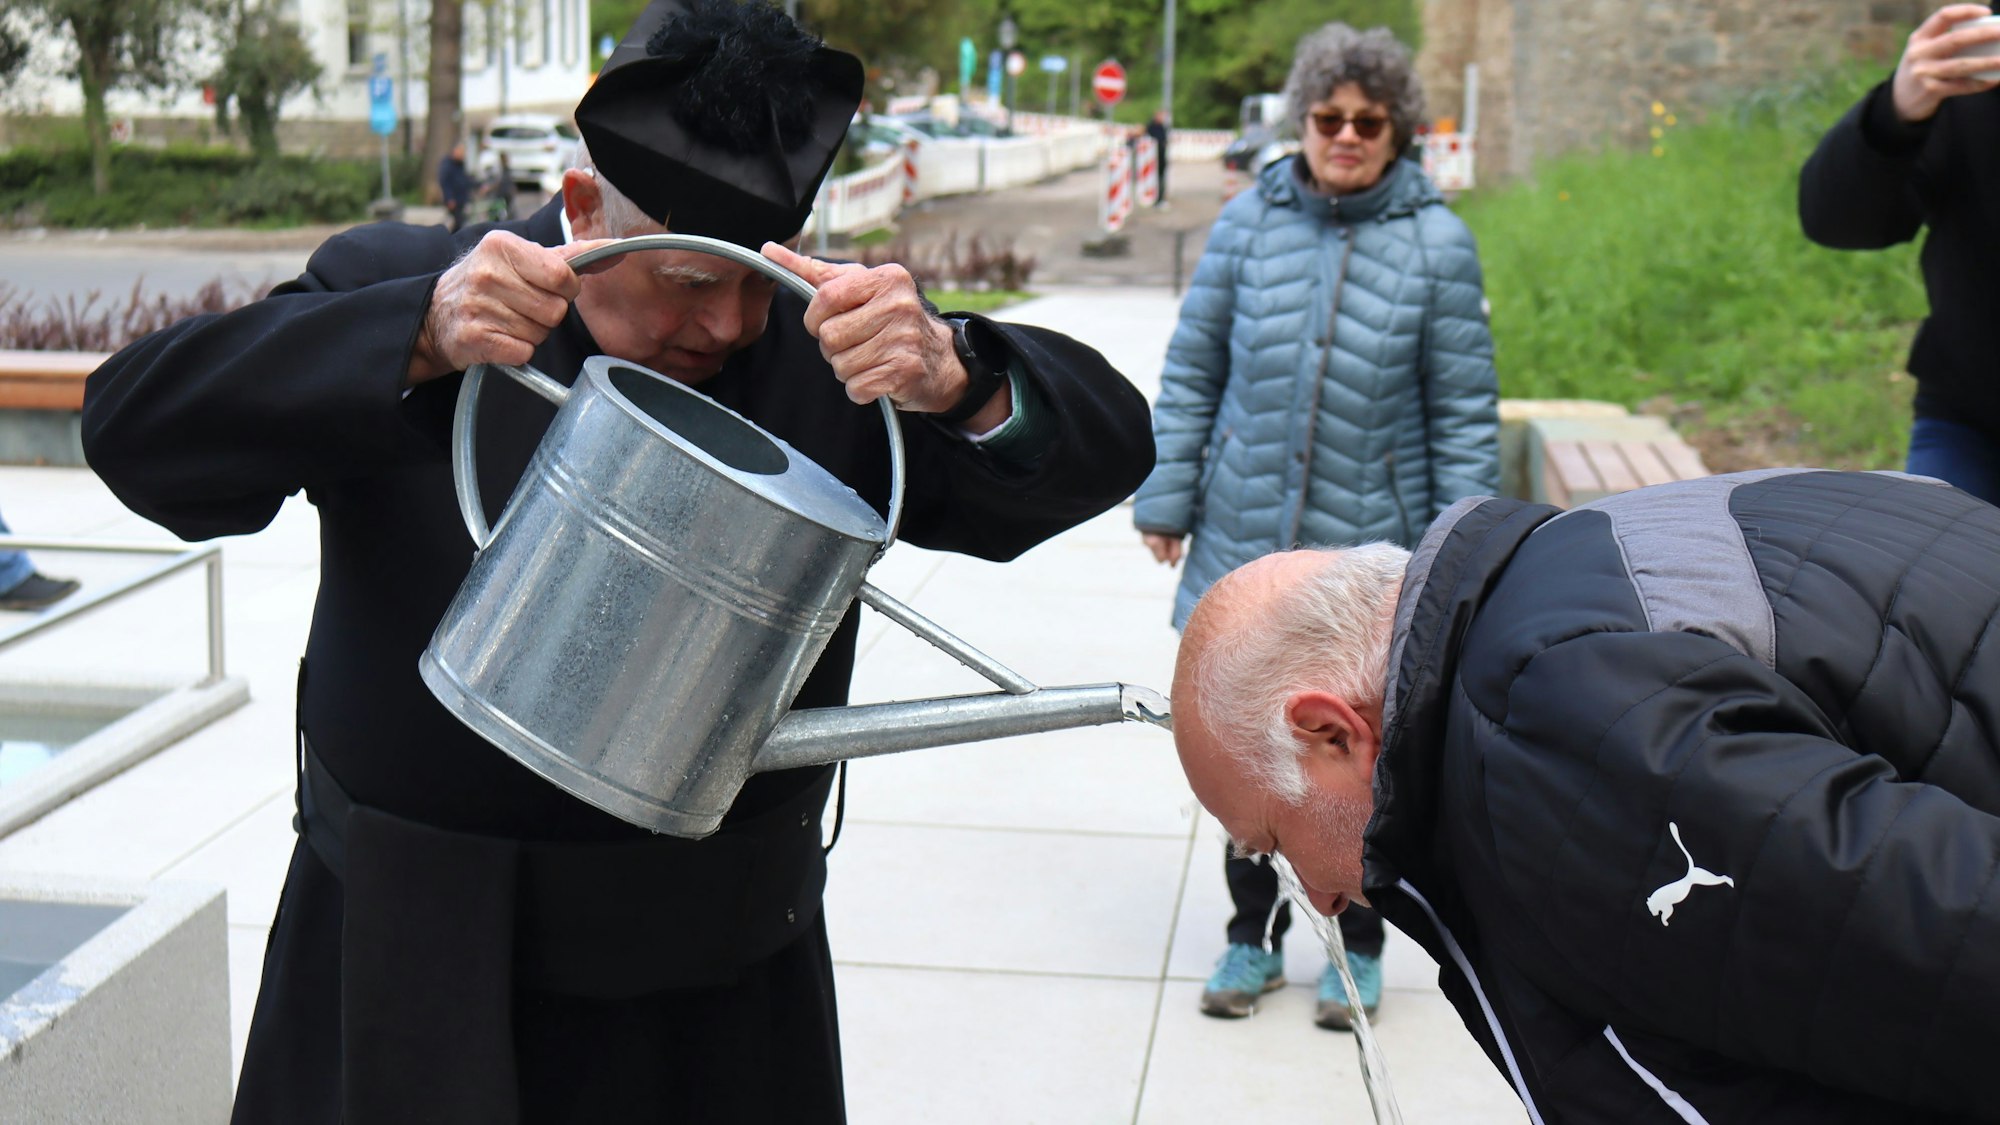 Ein Mann im Pfarrer-Kostüm übergießt einen anderen Mann aus einer Gießkanne mit Wasser.